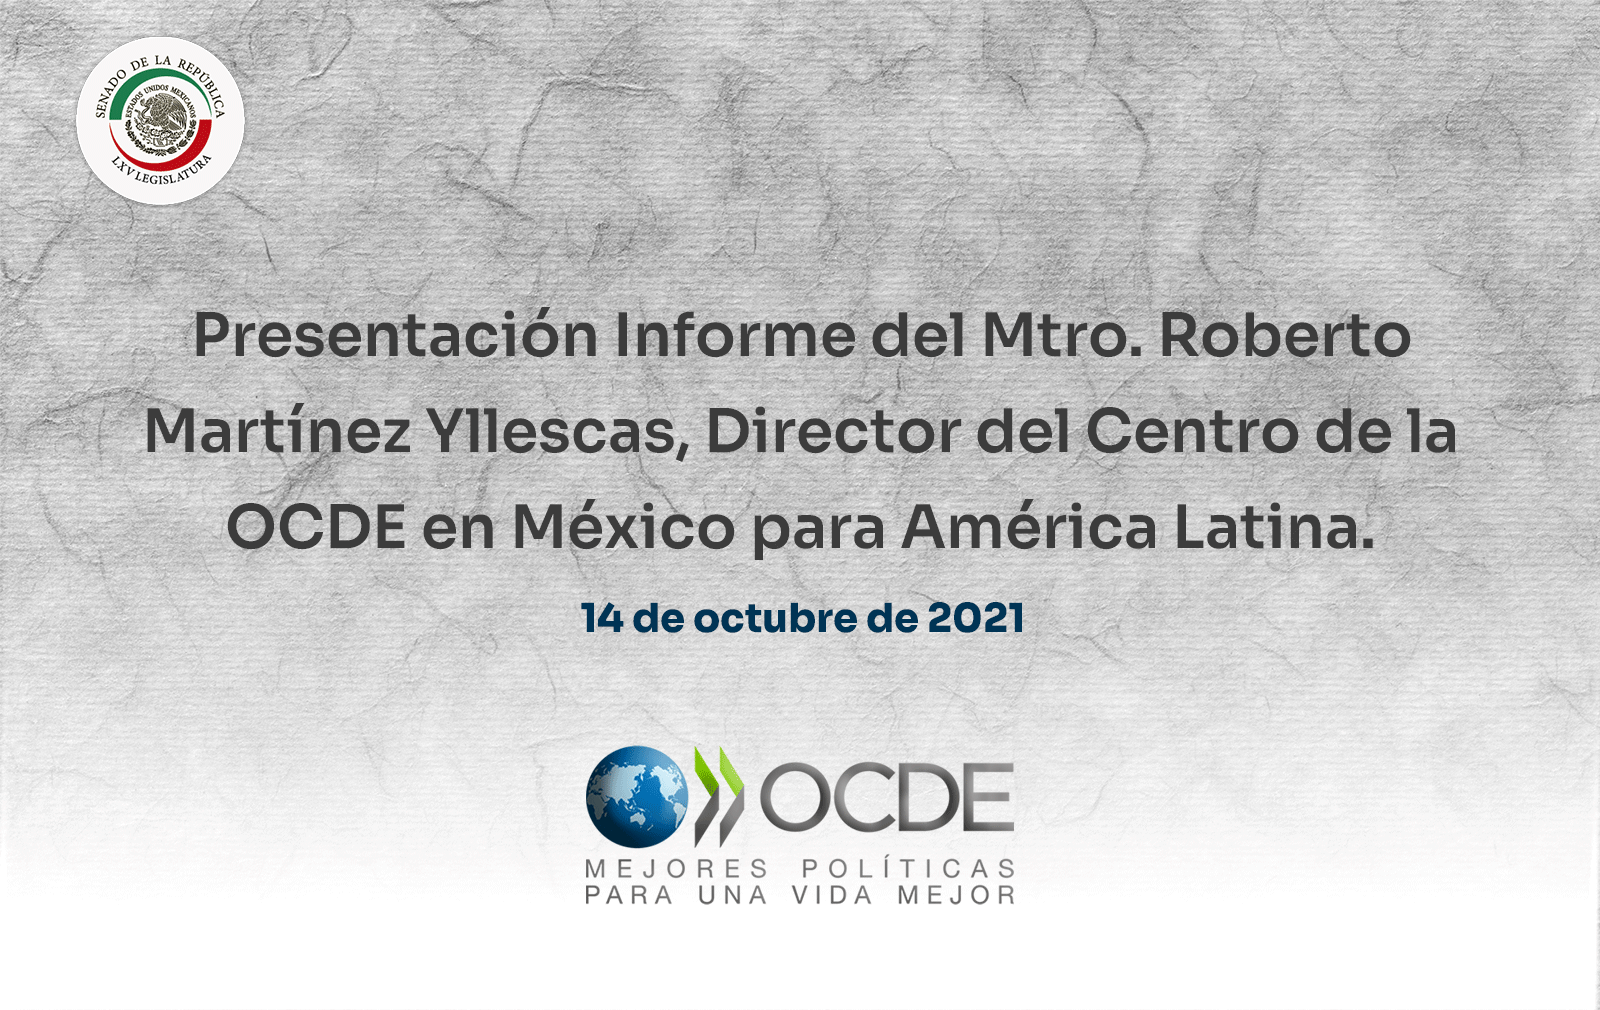 Presentación Informe del Mtro. Roberto Martínez Yllescas, Director del Centro de la OCDE en México para América Latina. 14 de octubre de 2021